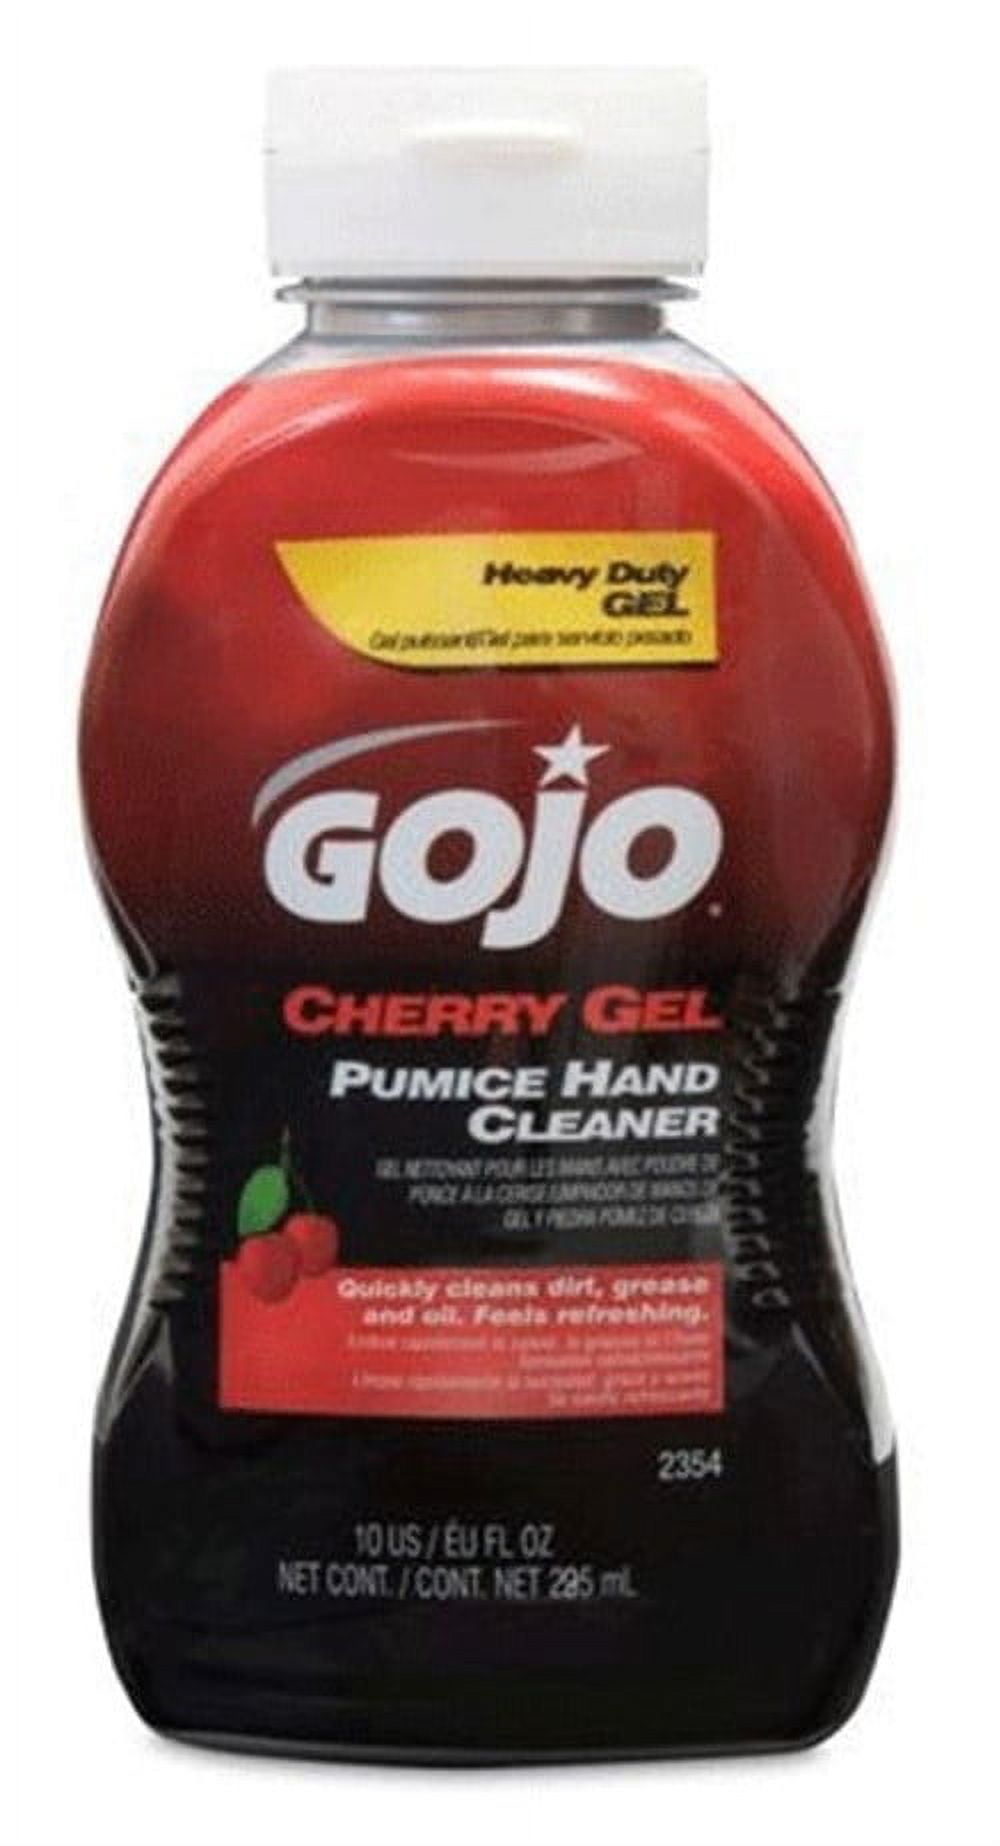 Gojo Cherry Gel Pumice Hand Cleaner, Cherry Scent, 10 oz Bottle